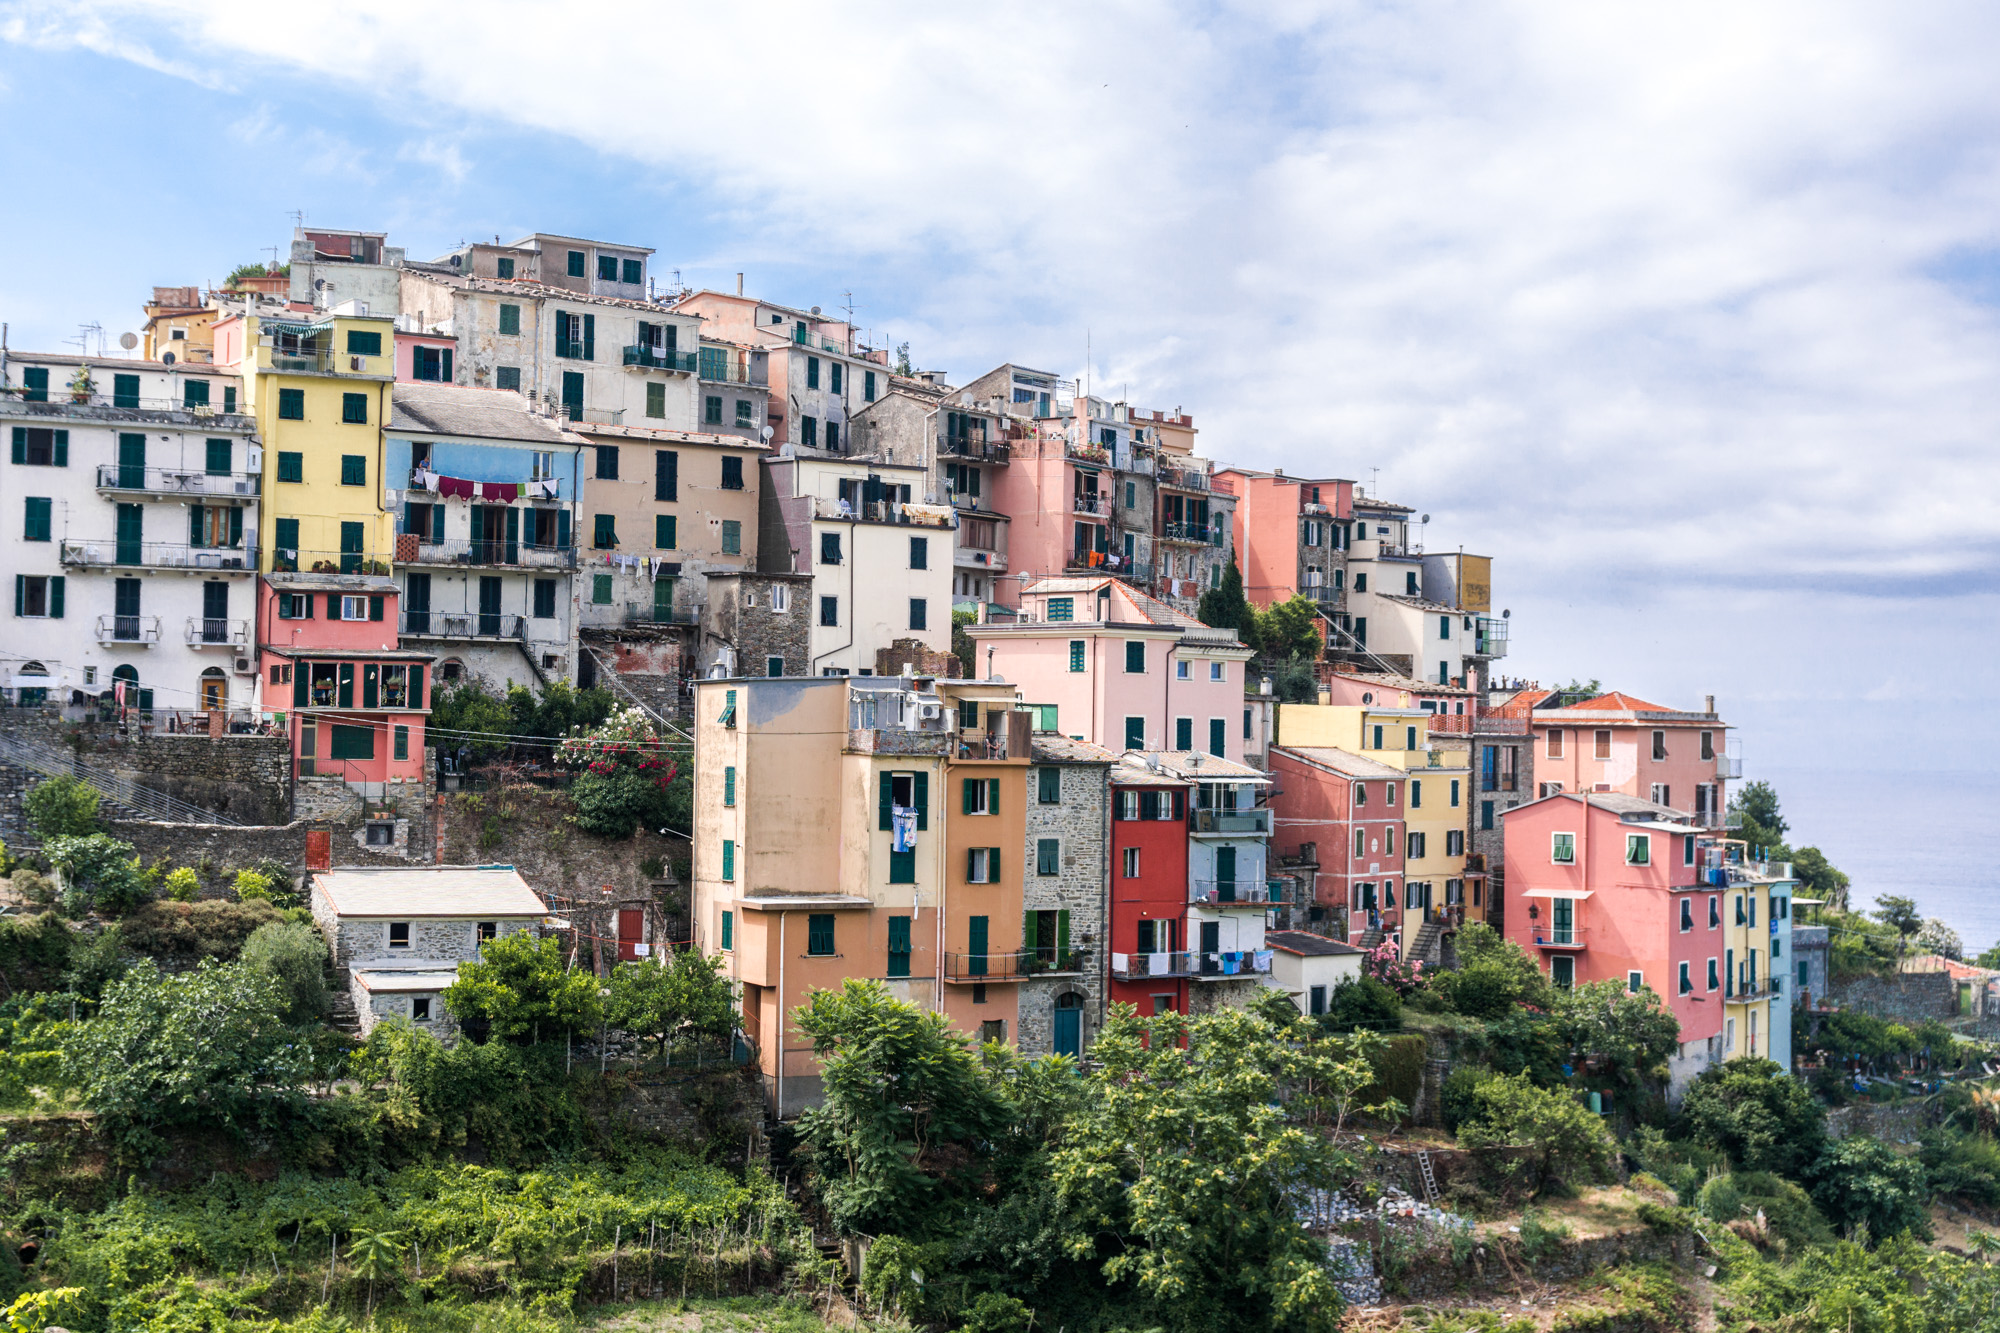 France/Italy roadtrip – the Cinque Terre path: Corniglia and Volastra